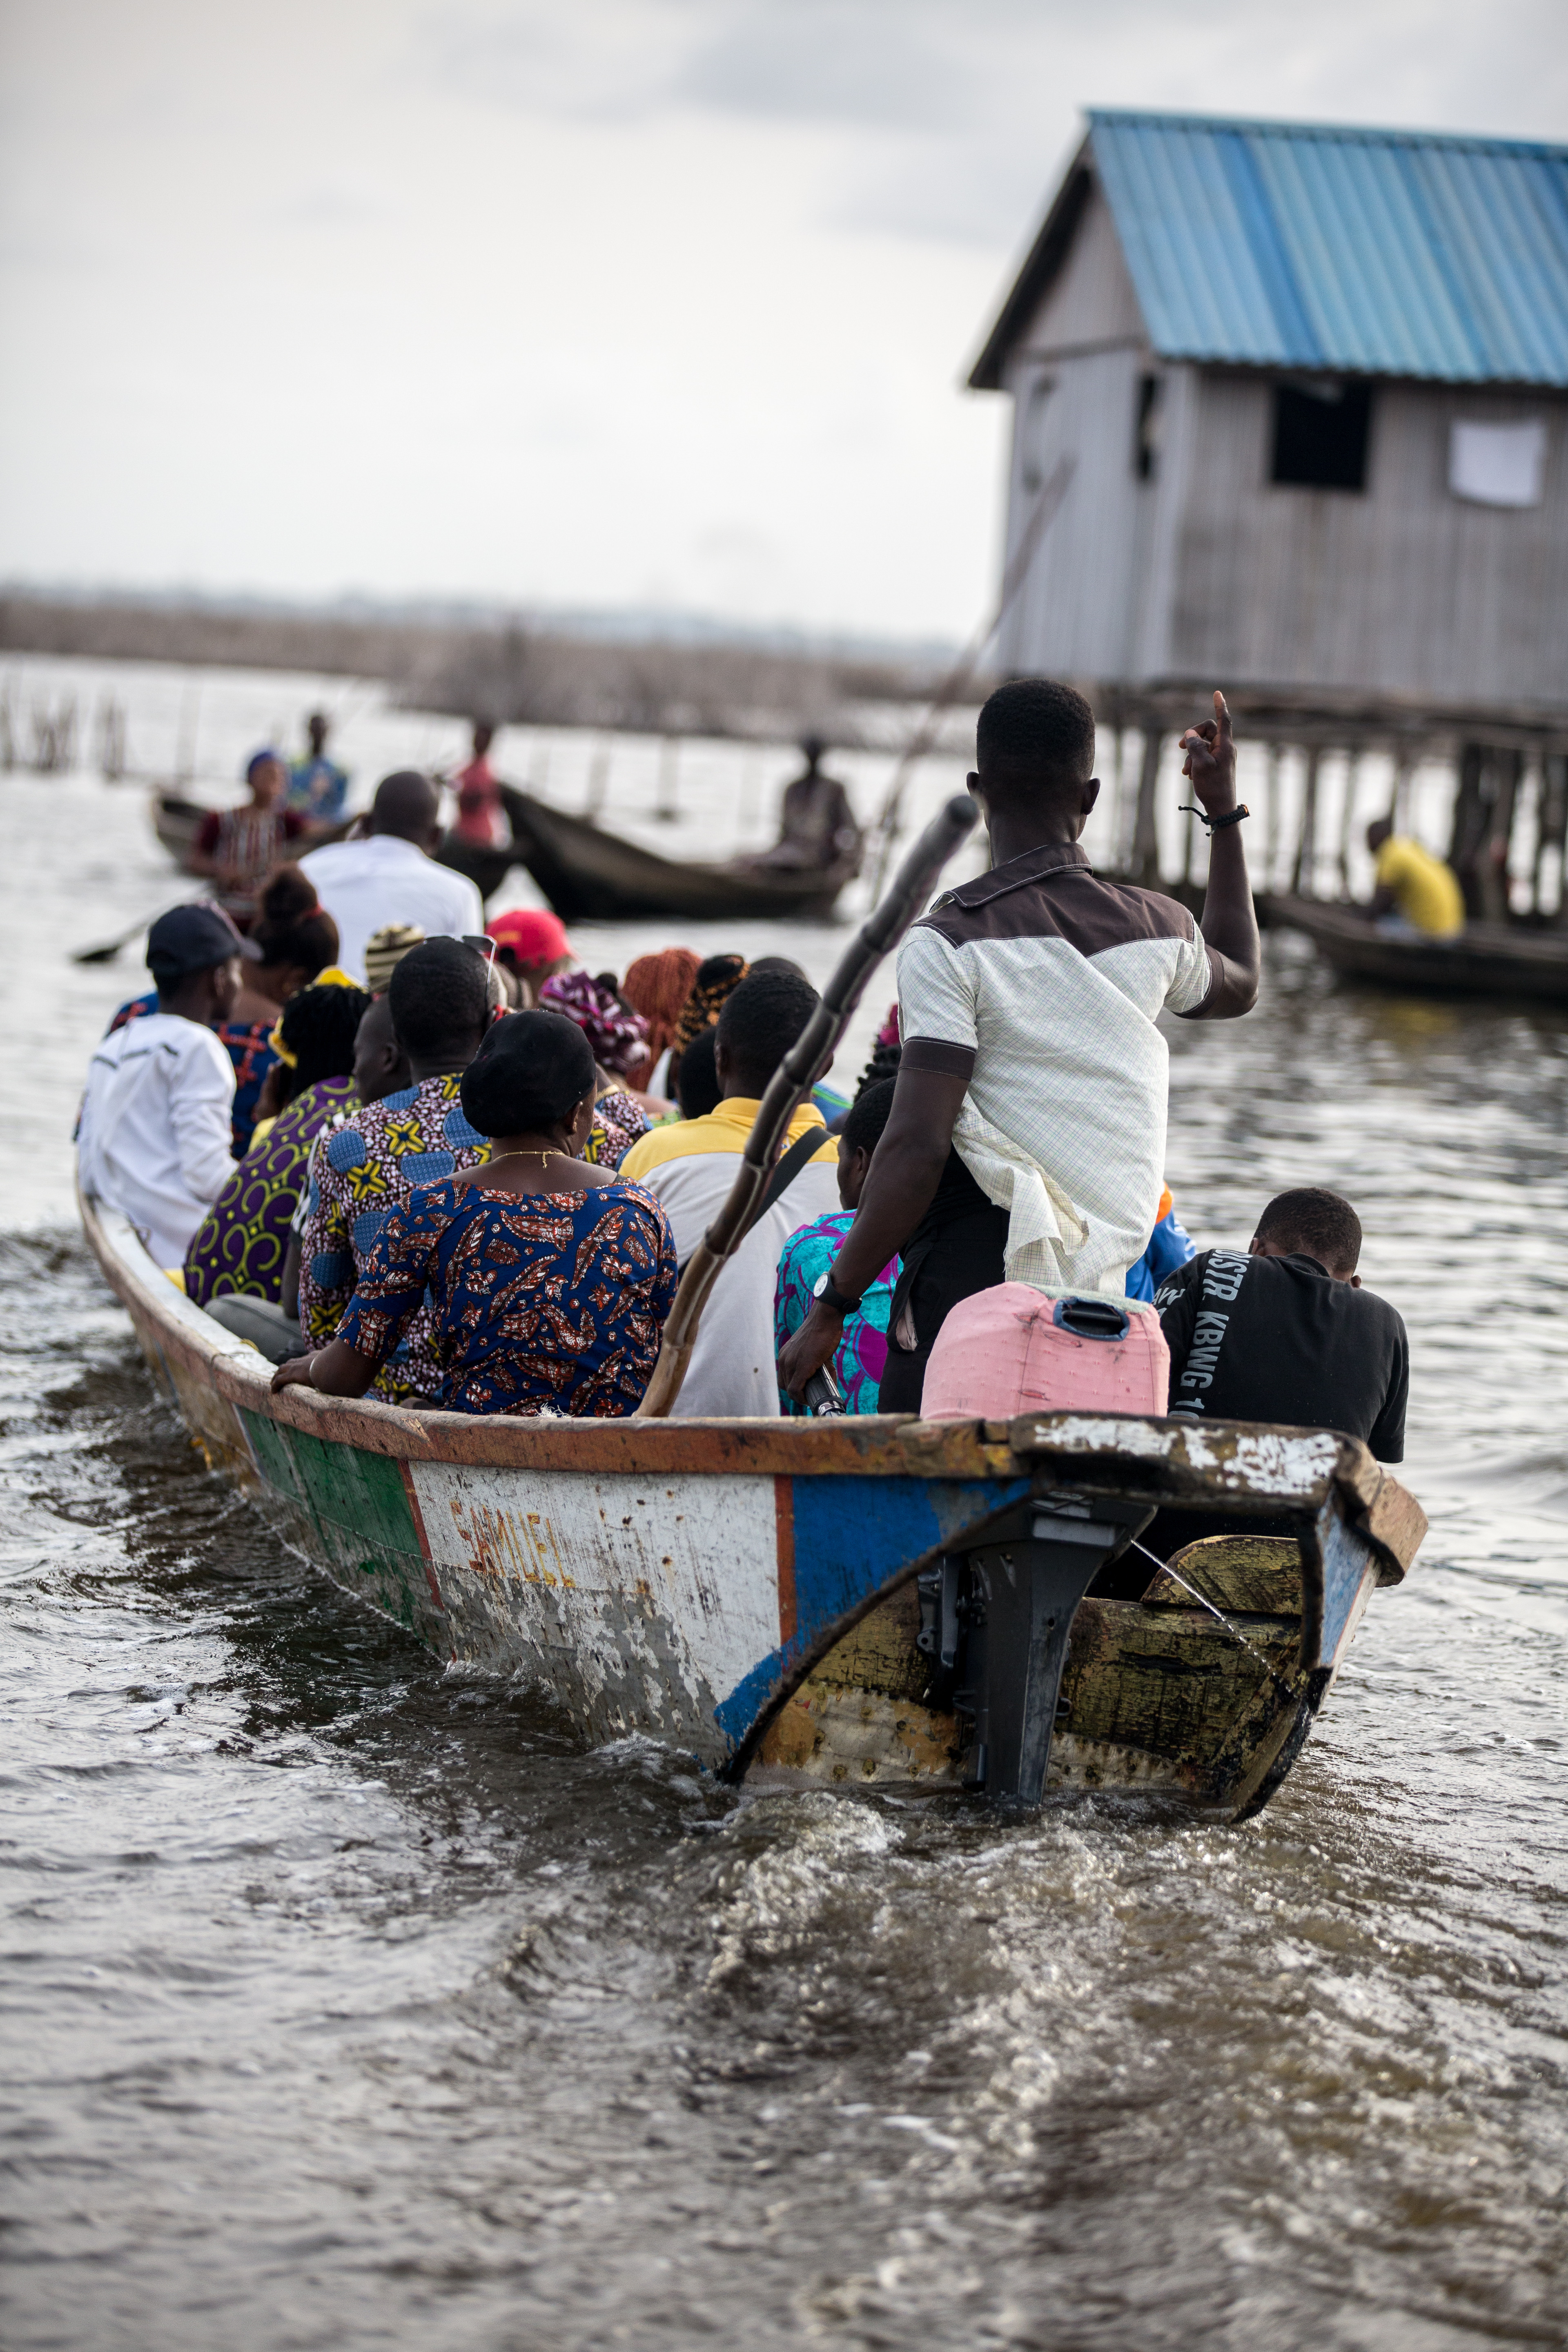 Ganvié.
A man on his canoe on Lake Nokoué.
Ganvié is a lakeside city in southern Benin that is part of the municipality of Sô-Ava in the Atlantic department, located on Lake Nokoué north of the metropolis of Cotonou, it is listed since 1996 on the indicative list of UNESCO but it is not yet classified.
Ganvié is one of the six projects included in the 2016-2021 Government Action Program (GAP) to develop tourism.
The cost of the project is estimated at 20 billion CFA francs (about 30.5 million euros).It includes sanitation and cleaning of the lake (from mid-2018 to the end of 2019. Ganvié 1, Benin - March 28, 2018.
Vie sur l’eau à Ganvié. 
Un homme sur sa pirogue sur le lac Nokoué.
Ganvié est une cité lacustre du sud du Bénin qui fait partie de la commune de Sô-Ava dans le département de l'Atlantique, situé sur le lac Nokoué au nord de la métropole de Cotonou, elle est inscrite depuis 1996 sur la liste indicative de l'UNESCO mais elle n’est pas encore classée.
Ganvié fait partie des six projets retenus dans le Programme d’actions du gouvernement (PAG) 2016-2021 pour développer le tourisme.
Le coût du projet est estimé à 20 milliards de F CFA (près de 30,5 millions d’euros). Il comprend l’assainissement et le curage du lac (de la mi-2018 à la fin de 2019. Ganvié 1, Bénin- 28 mars 2018., 2018.